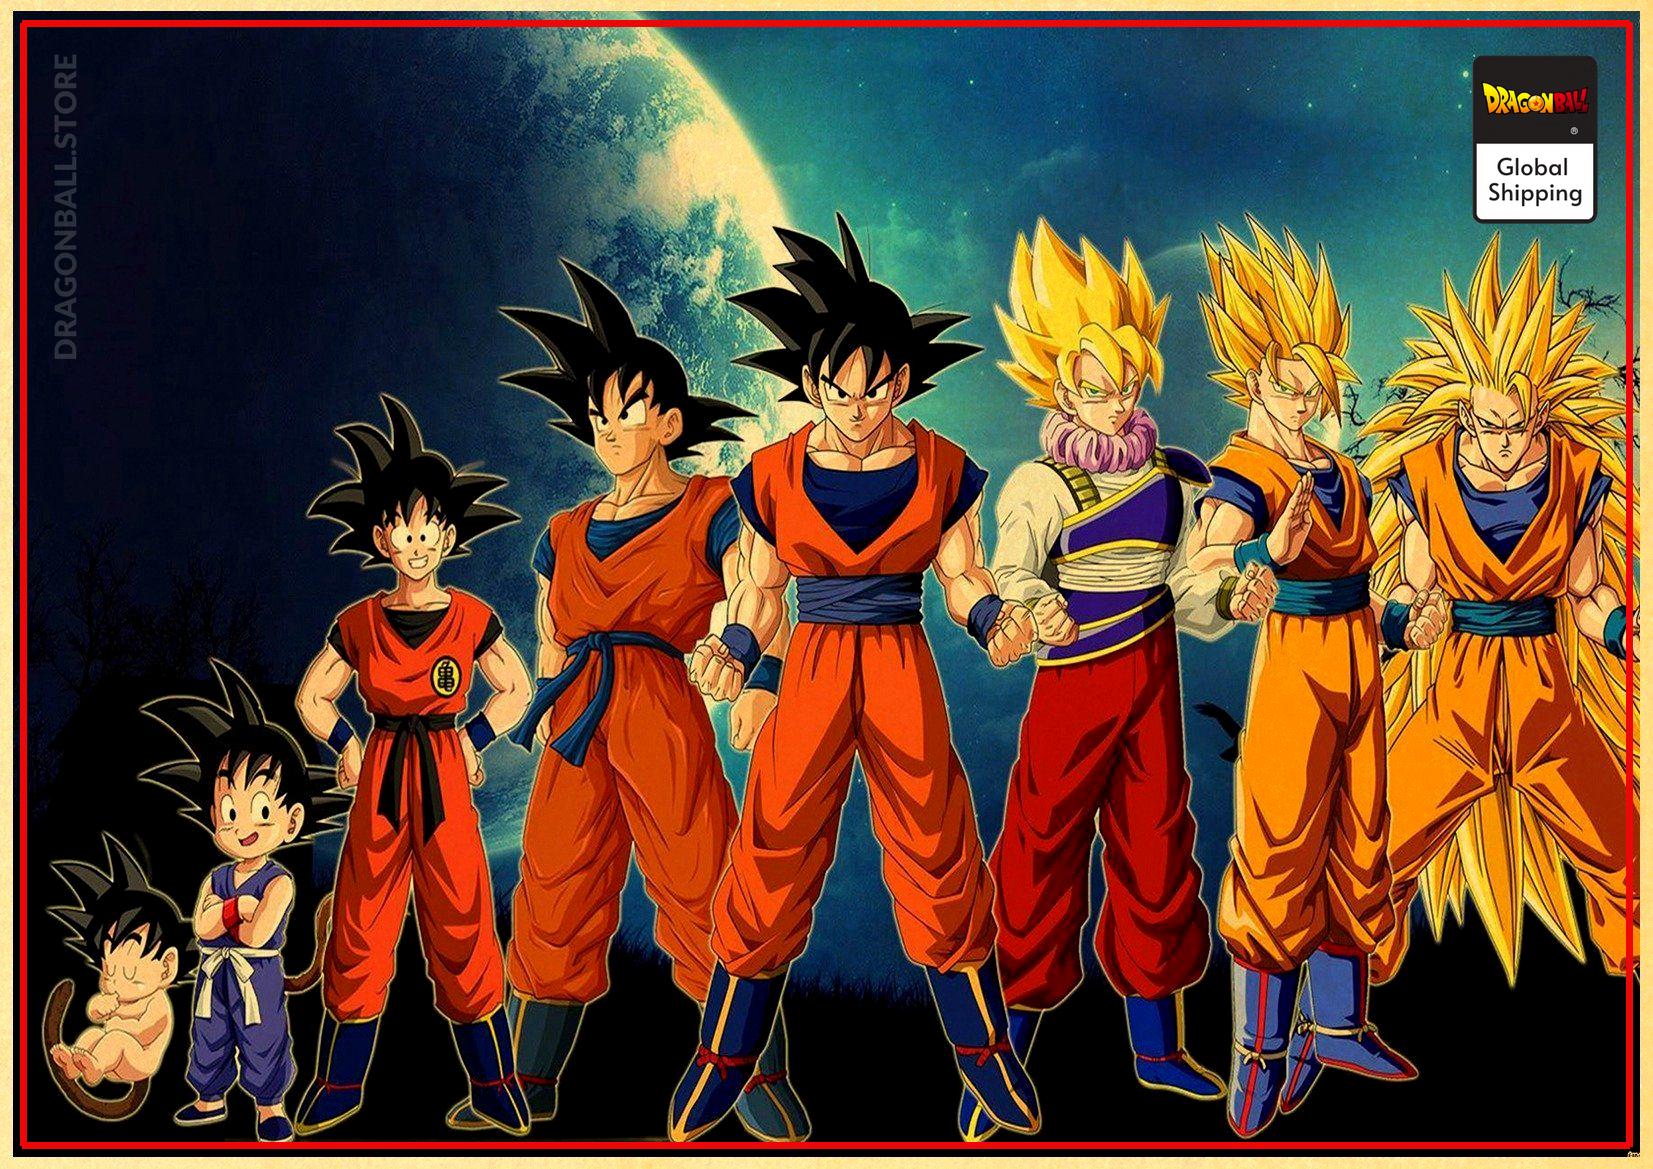 Dragonball Evolution: Goku  Dragonball evolution, Evolution